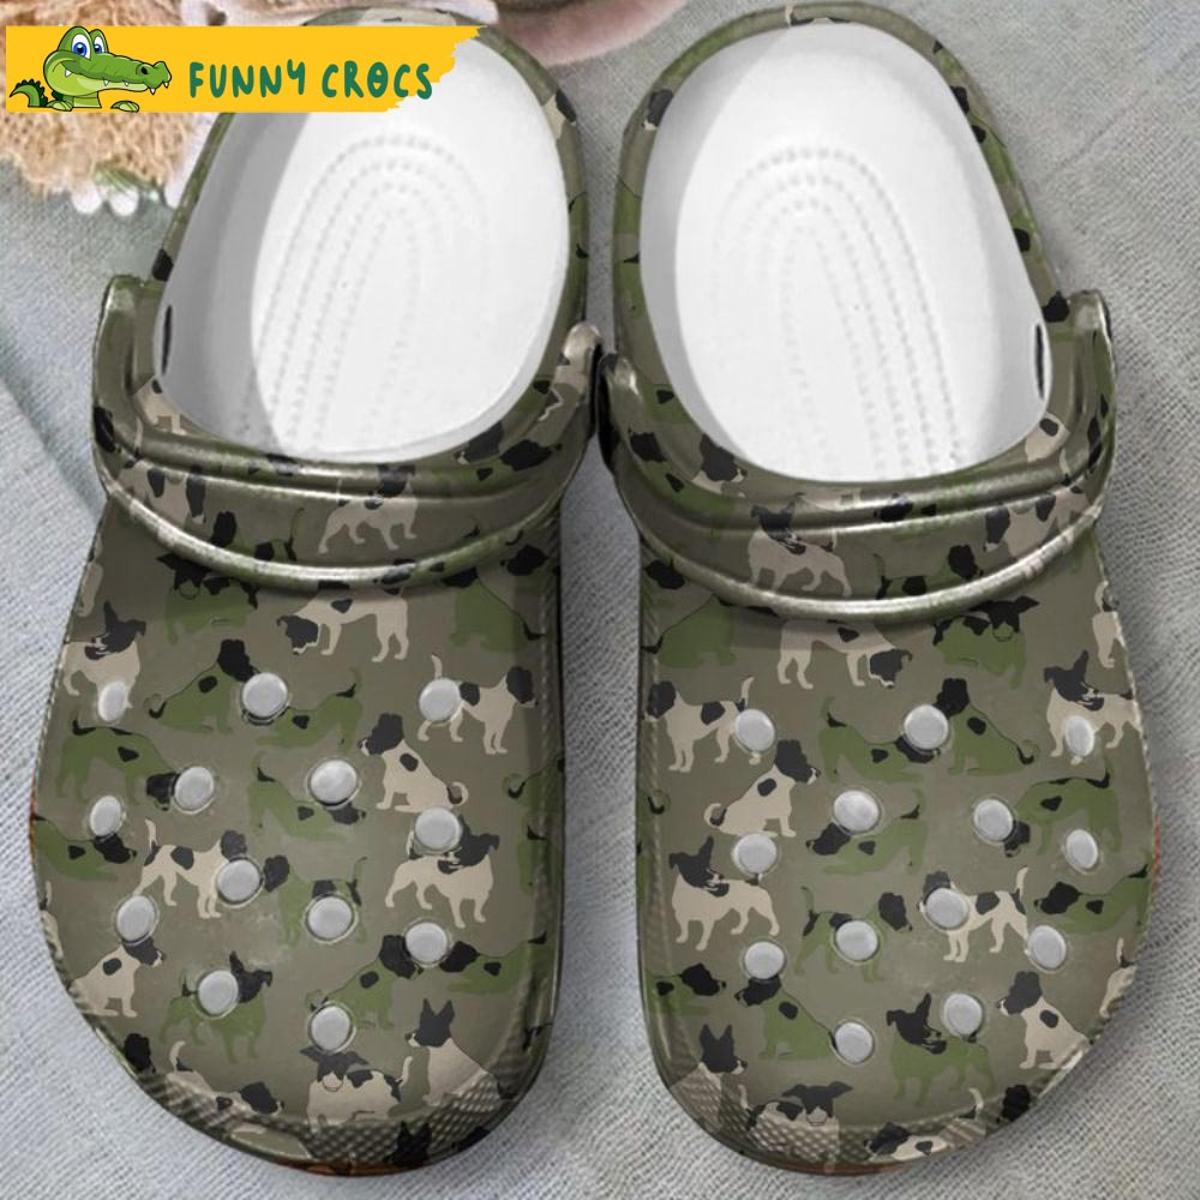 Boxer Cute Dog Crocs Shoes